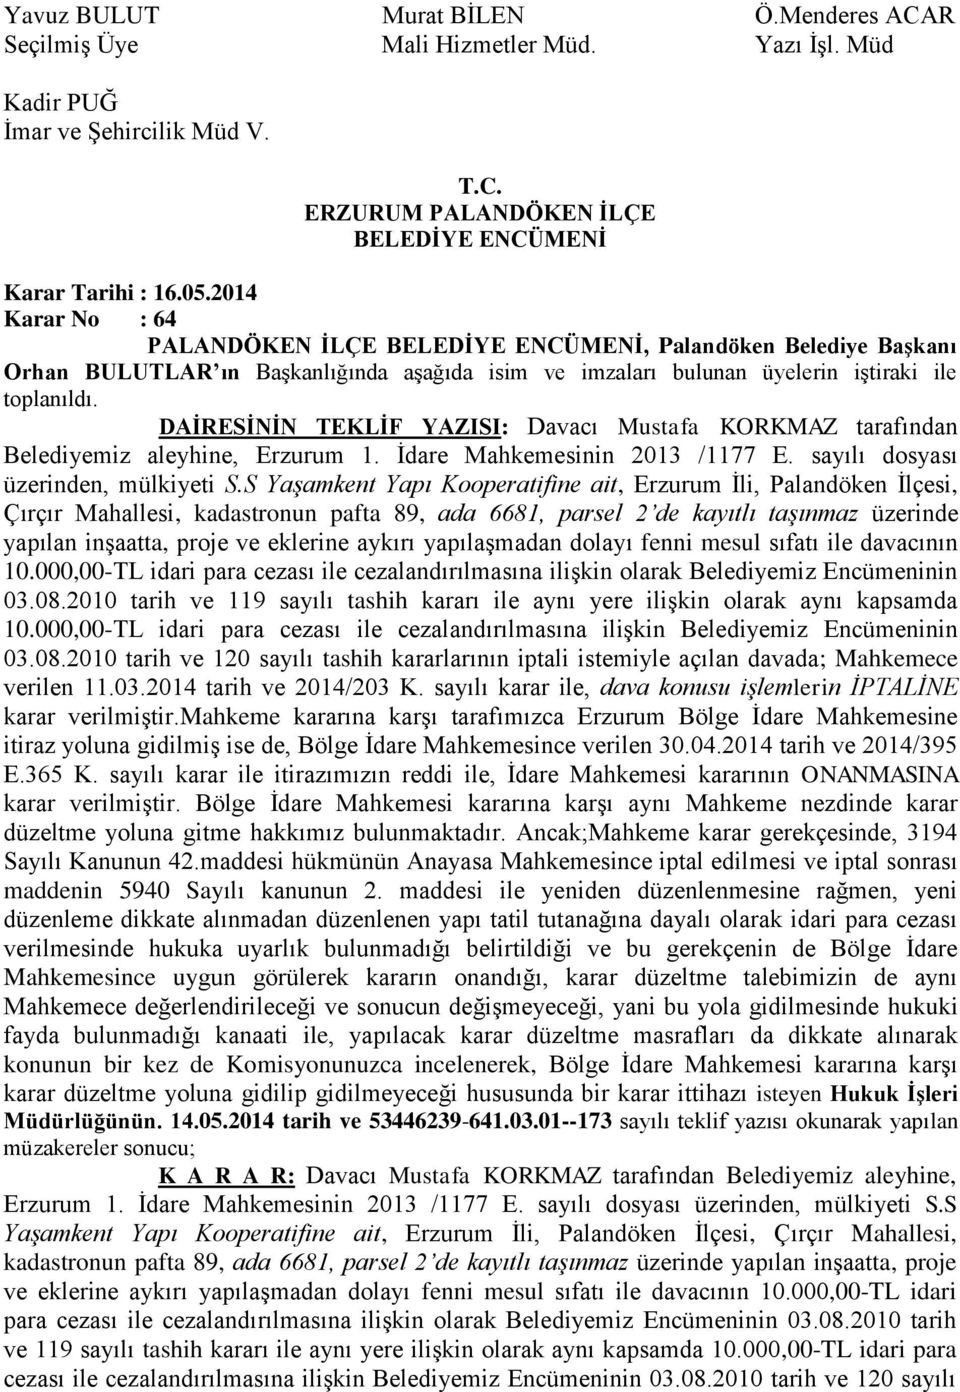 DAİRESİNİN TEKLİF YAZISI: Davacı Mustafa KORKMAZ tarafından Belediyemiz aleyhine, Erzurum 1. İdare Mahkemesinin 2013 /1177 E. sayılı dosyası üzerinden, mülkiyeti S.